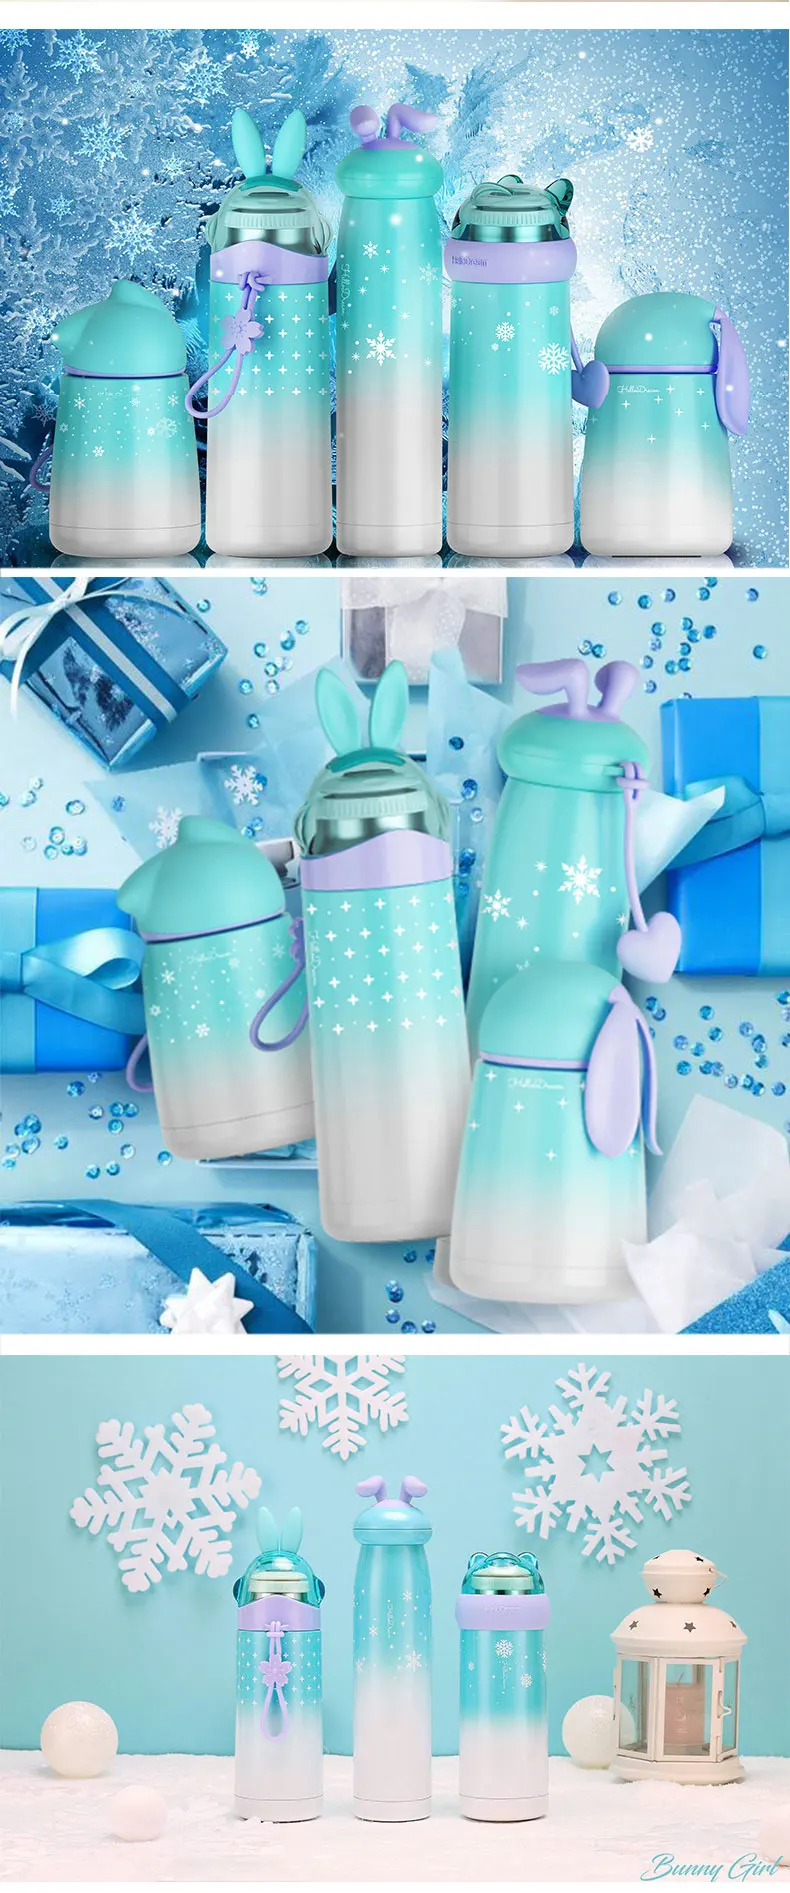 Горячая Bpa-free двухслойный термос для кофе и молока flack stars moon sky градиентные цвета Вакуумная чашка креативные бутылки с животными modeli